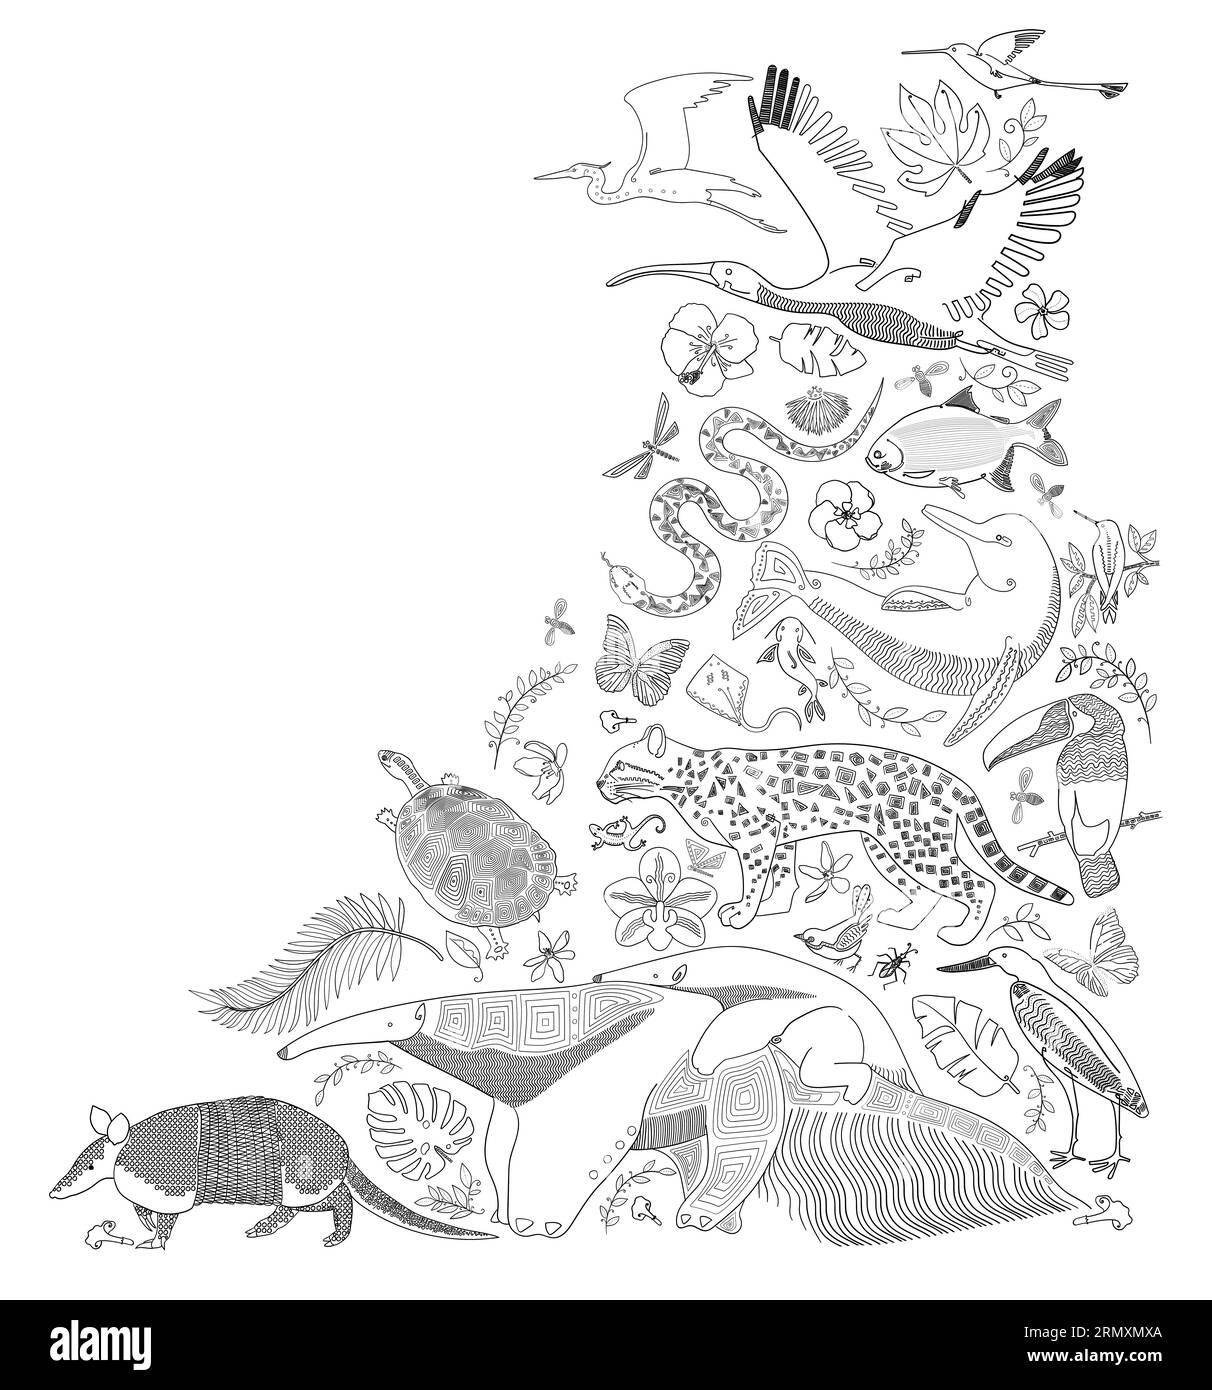 Illustration im Stich von Tieren der kolumbianischen und venezolanischen Ebenen, Armadillo, Ameisenfresser, Ozelot, Schildkröte, Tukan, Delfin, Stachelrochen, aber Stockfoto